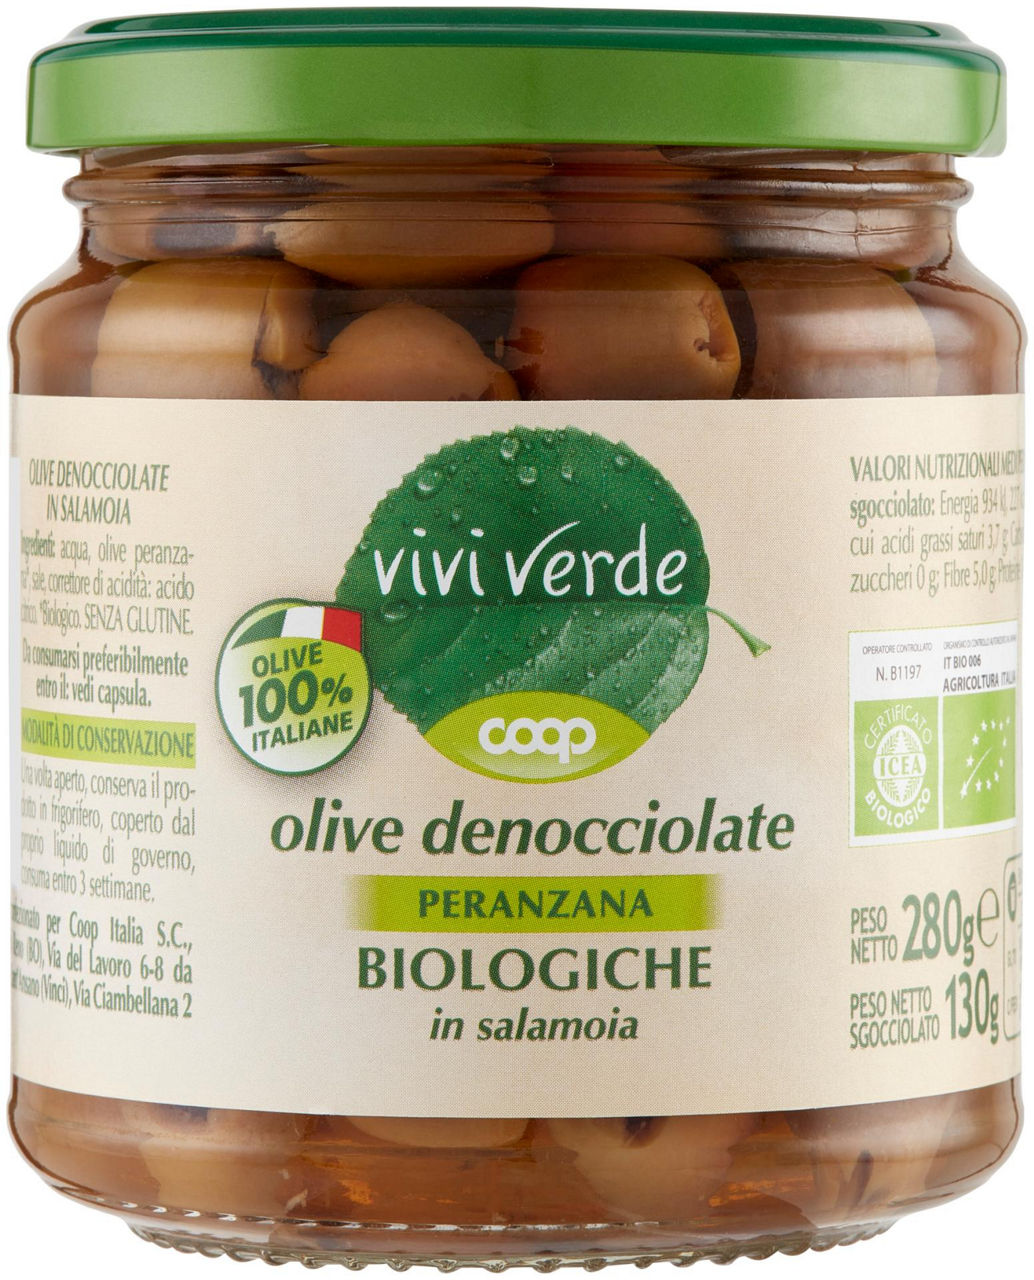 Olive denocciolate peranzana biologiche in salamoia vivi verde 280 g